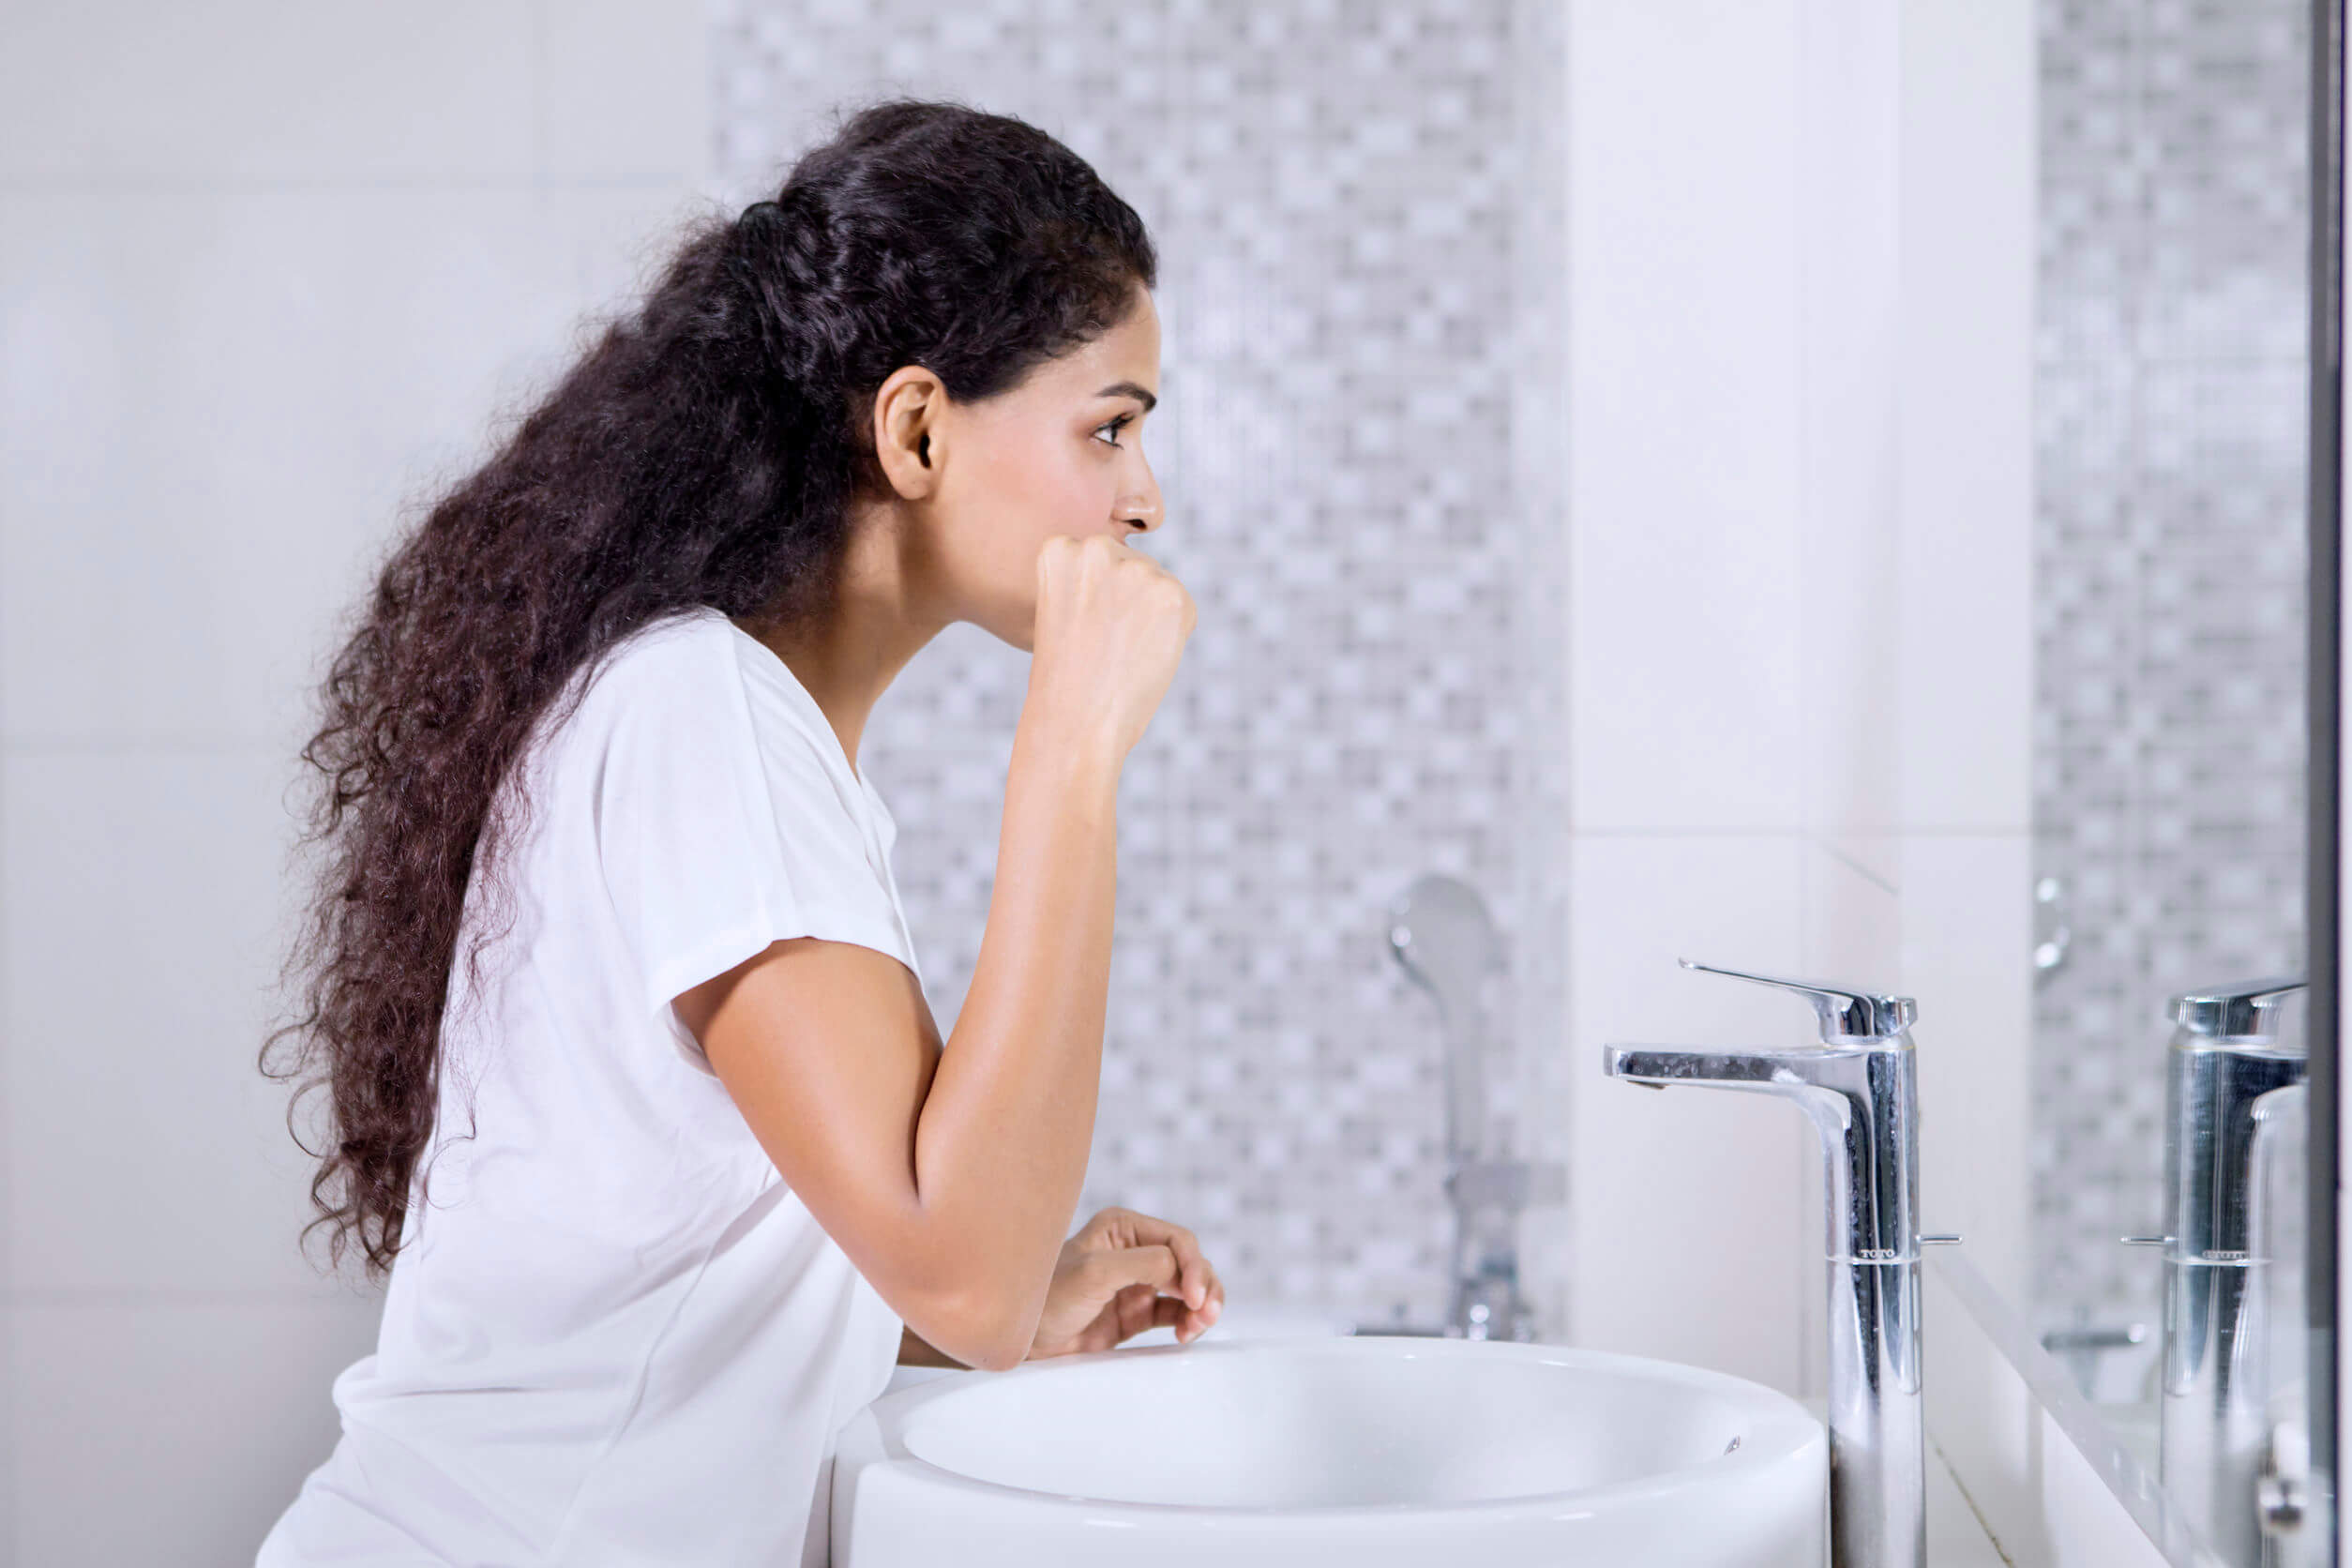 Creare nuove abitudini associandole a una già consolidata, come lavarsi i denti.